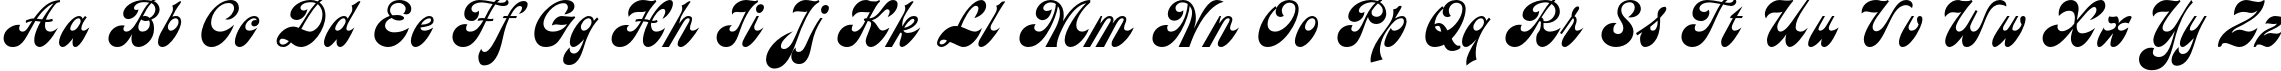 Пример написания английского алфавита шрифтом AstronC